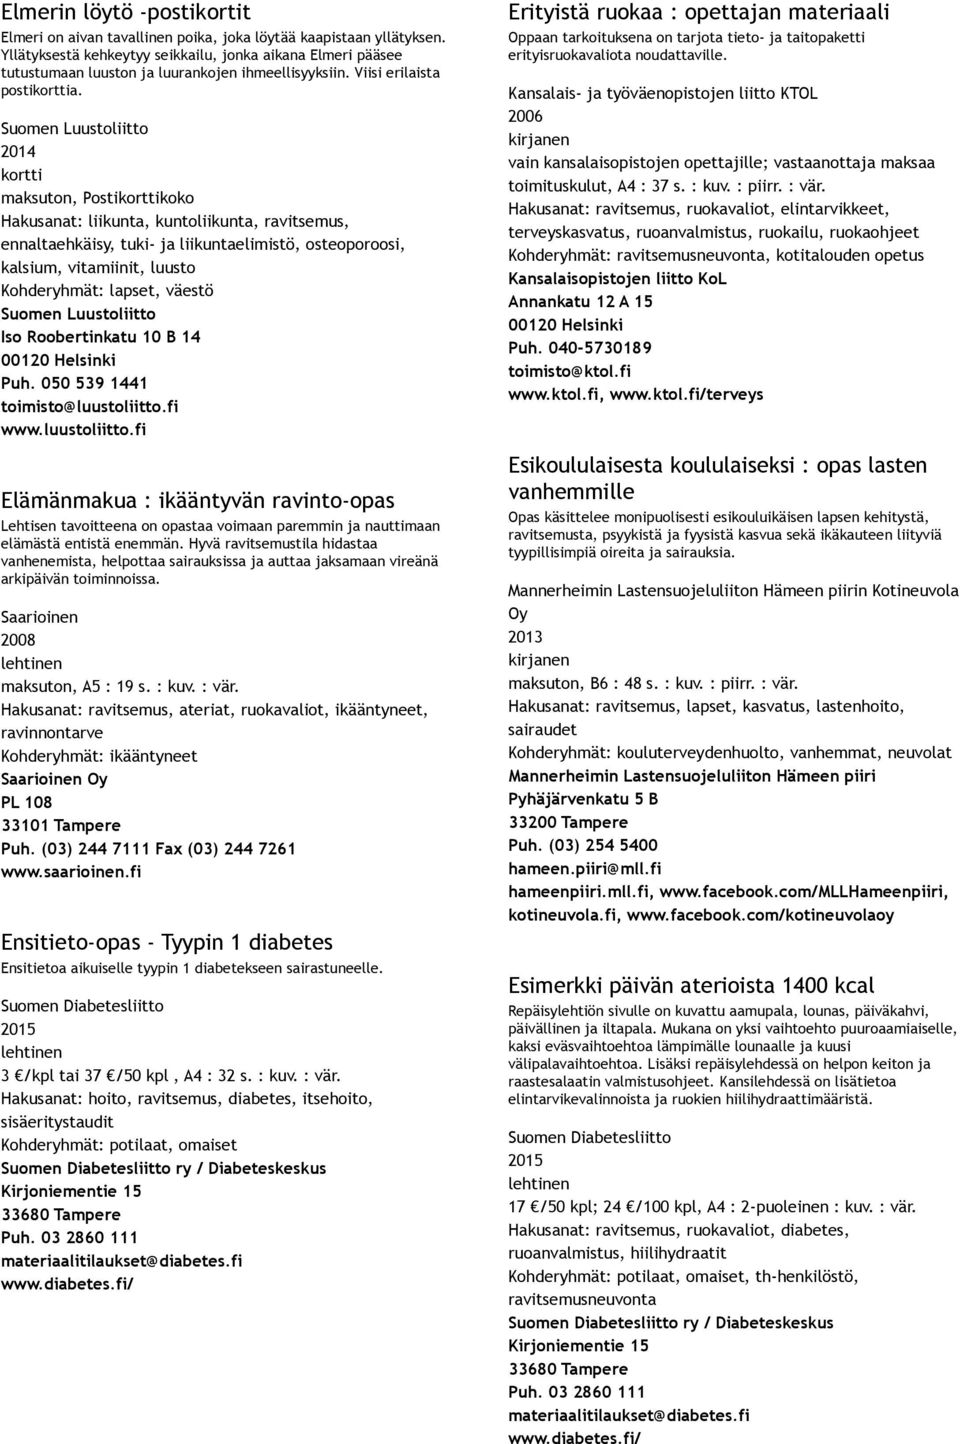 Suomen Luustoliitto kortti maksuton, Postikorttikoko Hakusanat: liikunta, kuntoliikunta, ravitsemus, ennaltaehkäisy, tuki ja liikuntaelimistö, osteoporoosi, kalsium, vitamiinit, luusto Kohderyhmät: